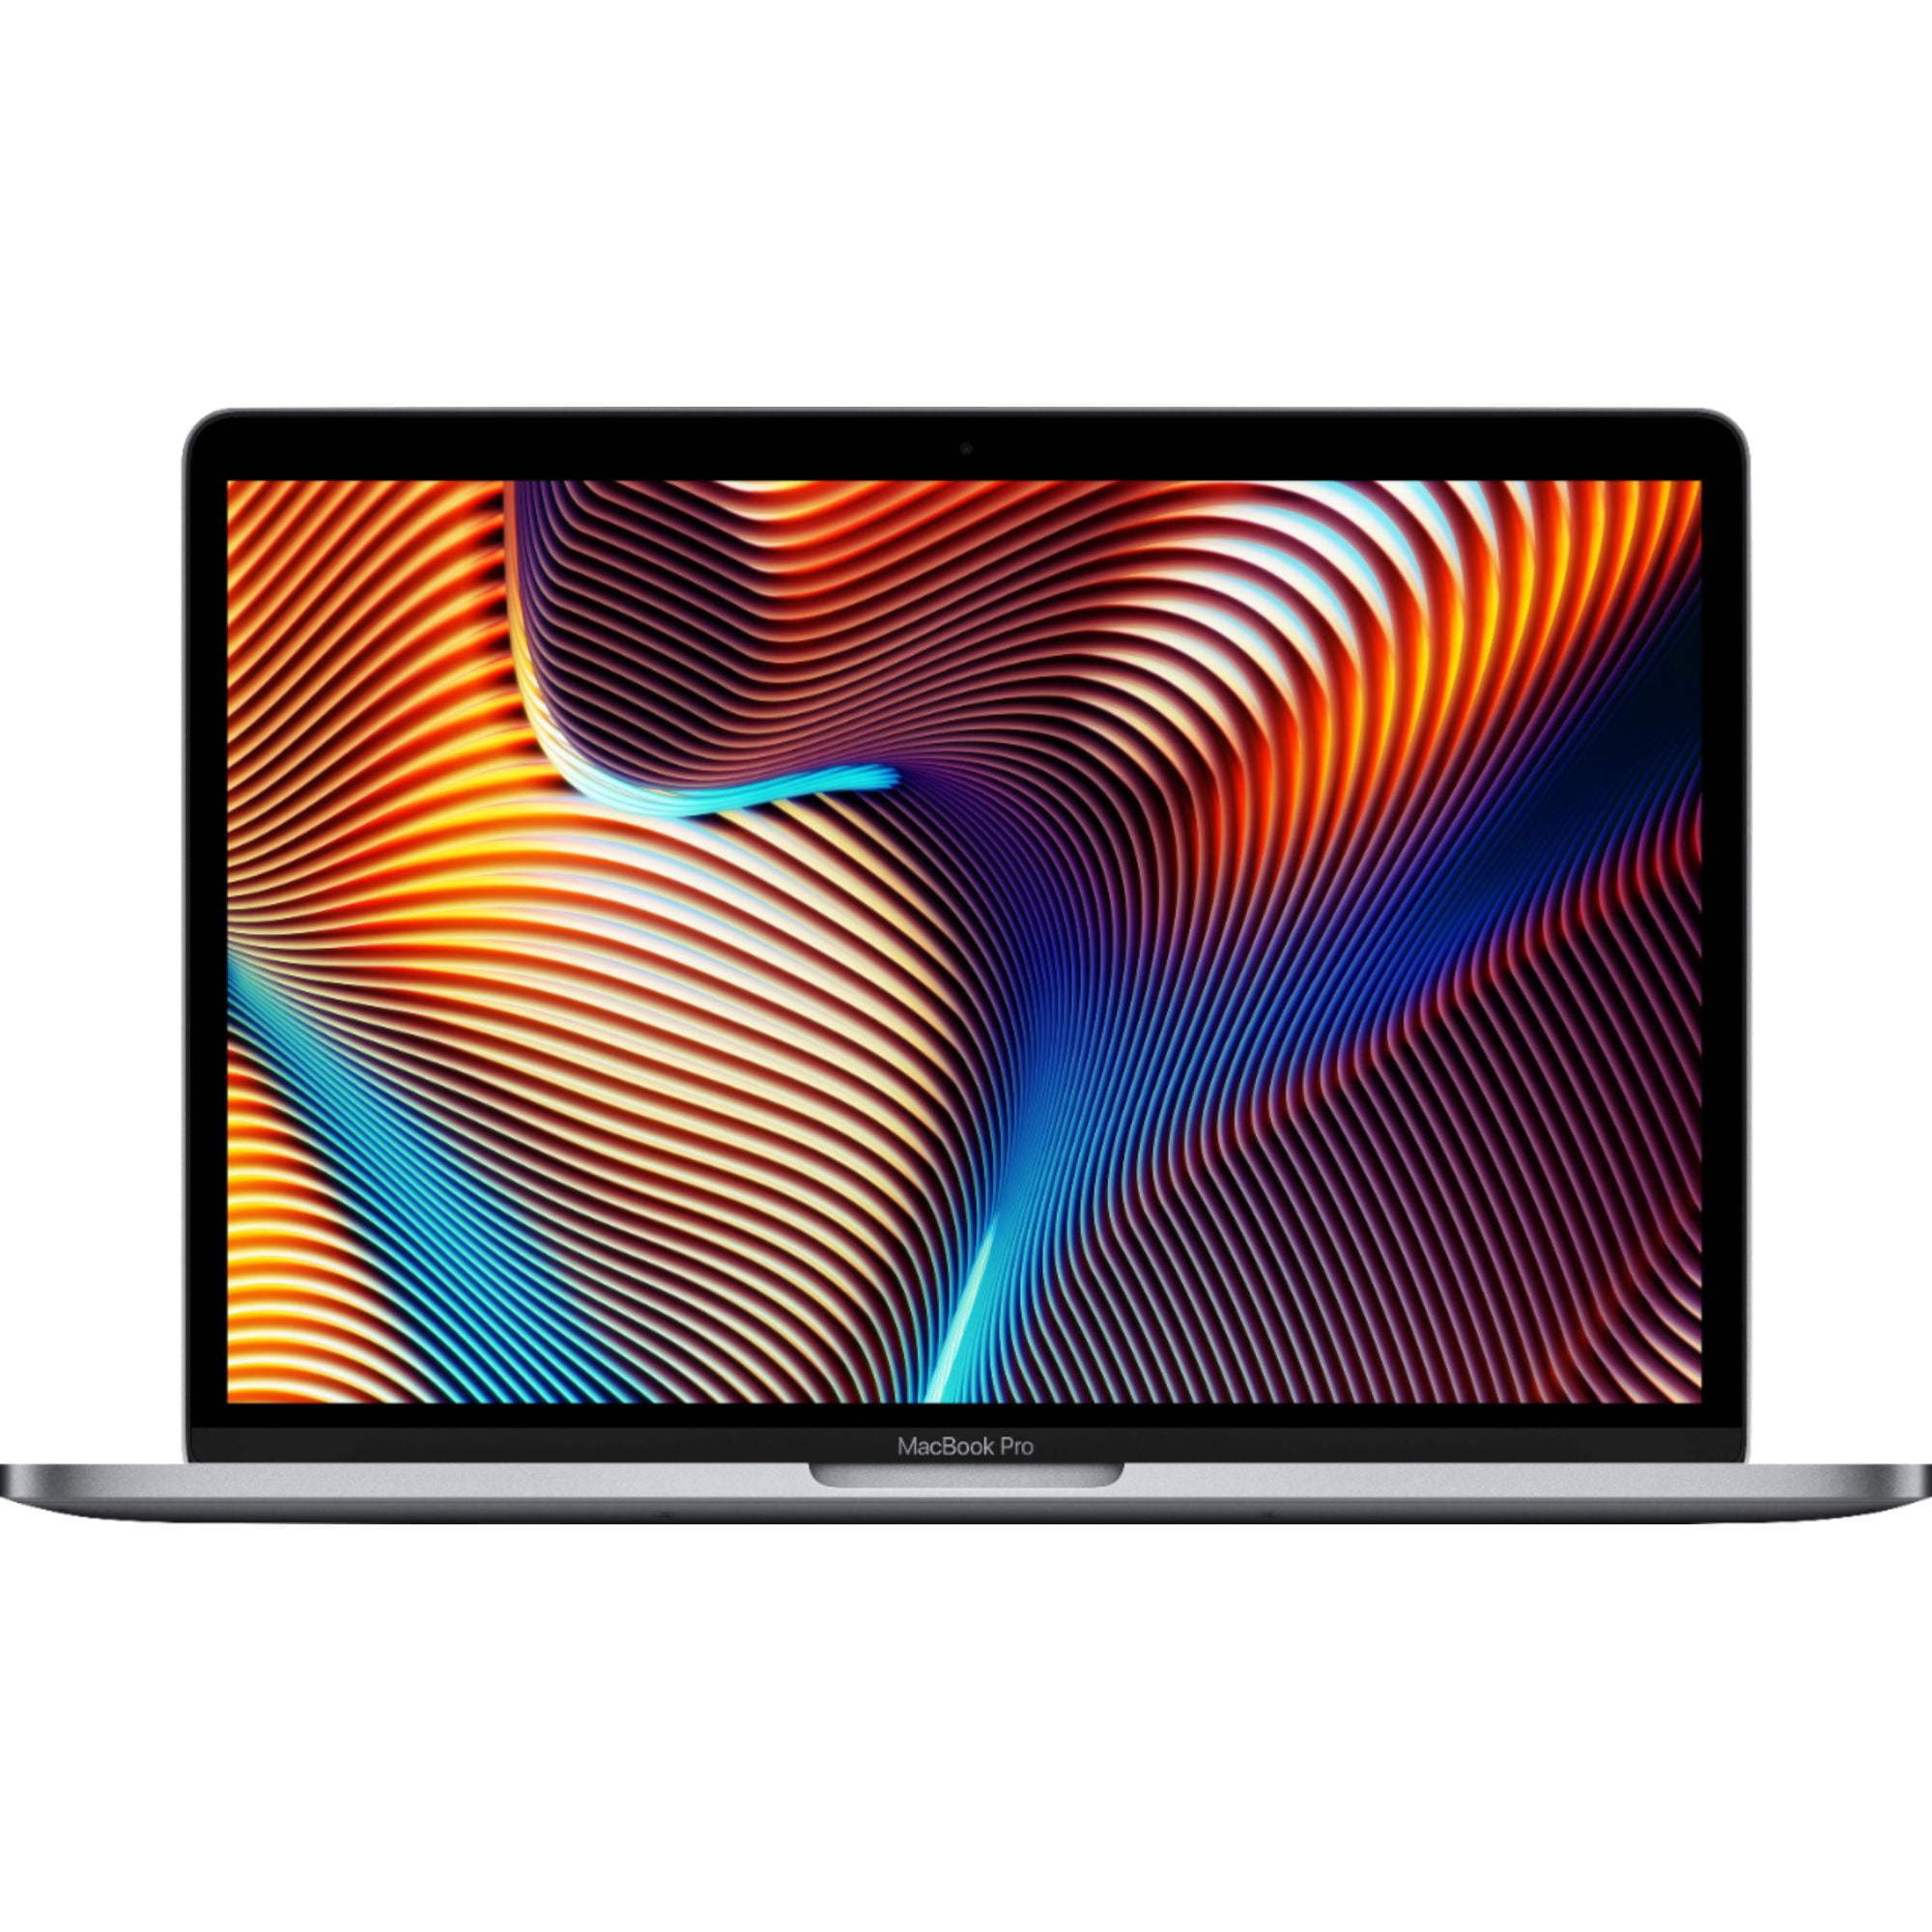 MacBook Pro 13 2019 スペースグレイ i5/256GB/8GB-